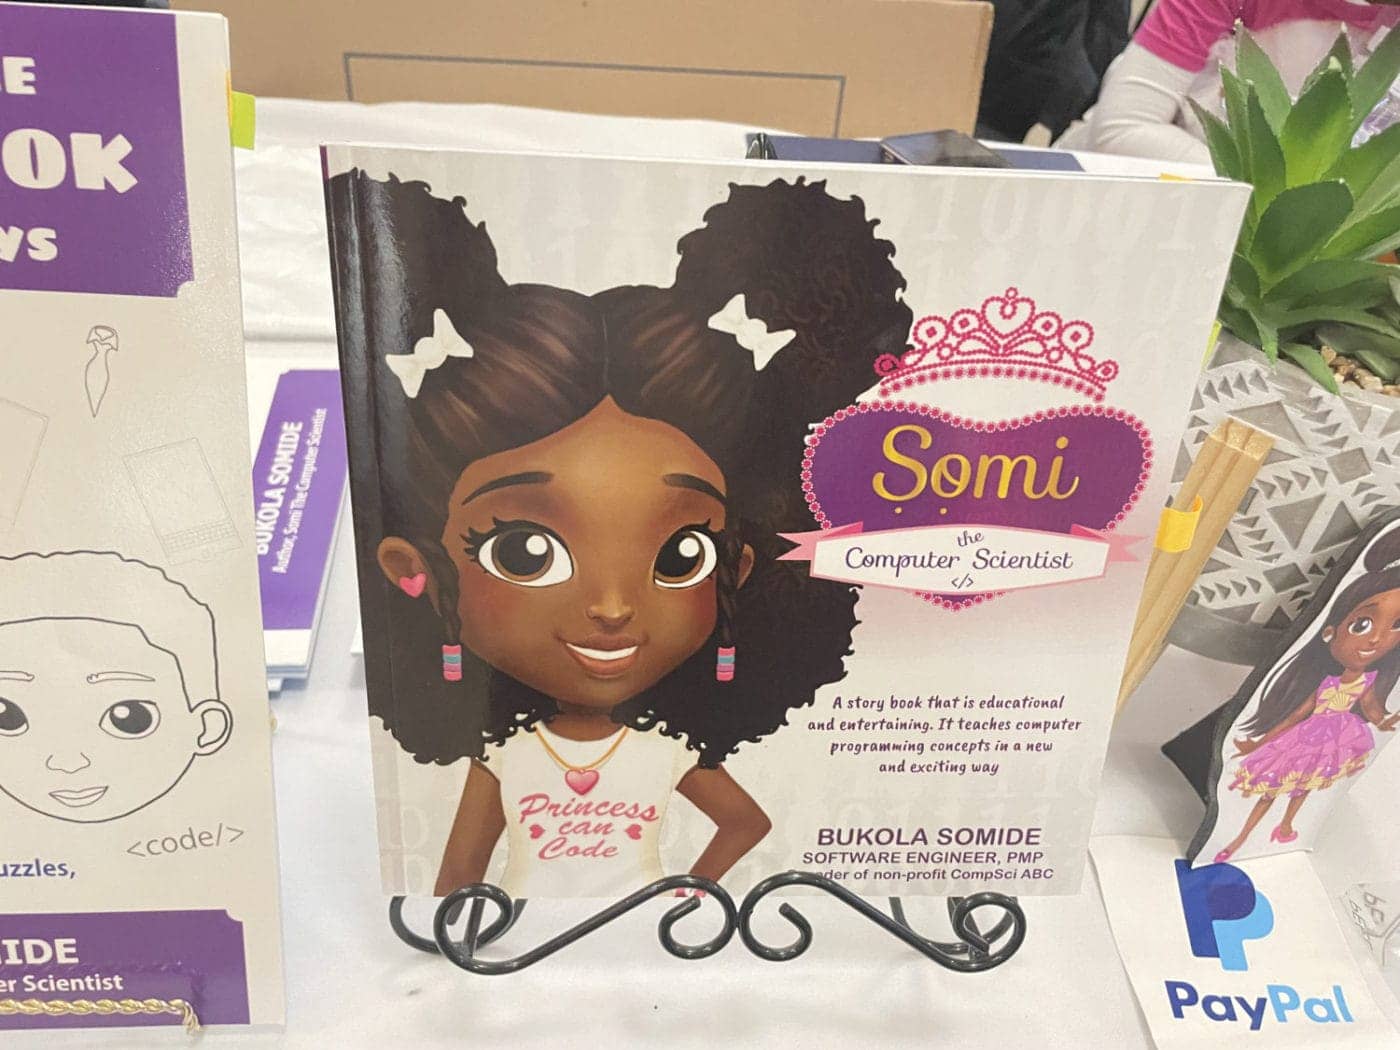 Black-Doll-Fest-speaker-Bukola-Somideas-book-AAMLO-110423-by-Daphne-1400x1050, Black Doll Festival visits Oakland’s African American Museum, Culture Currents World News & Views 